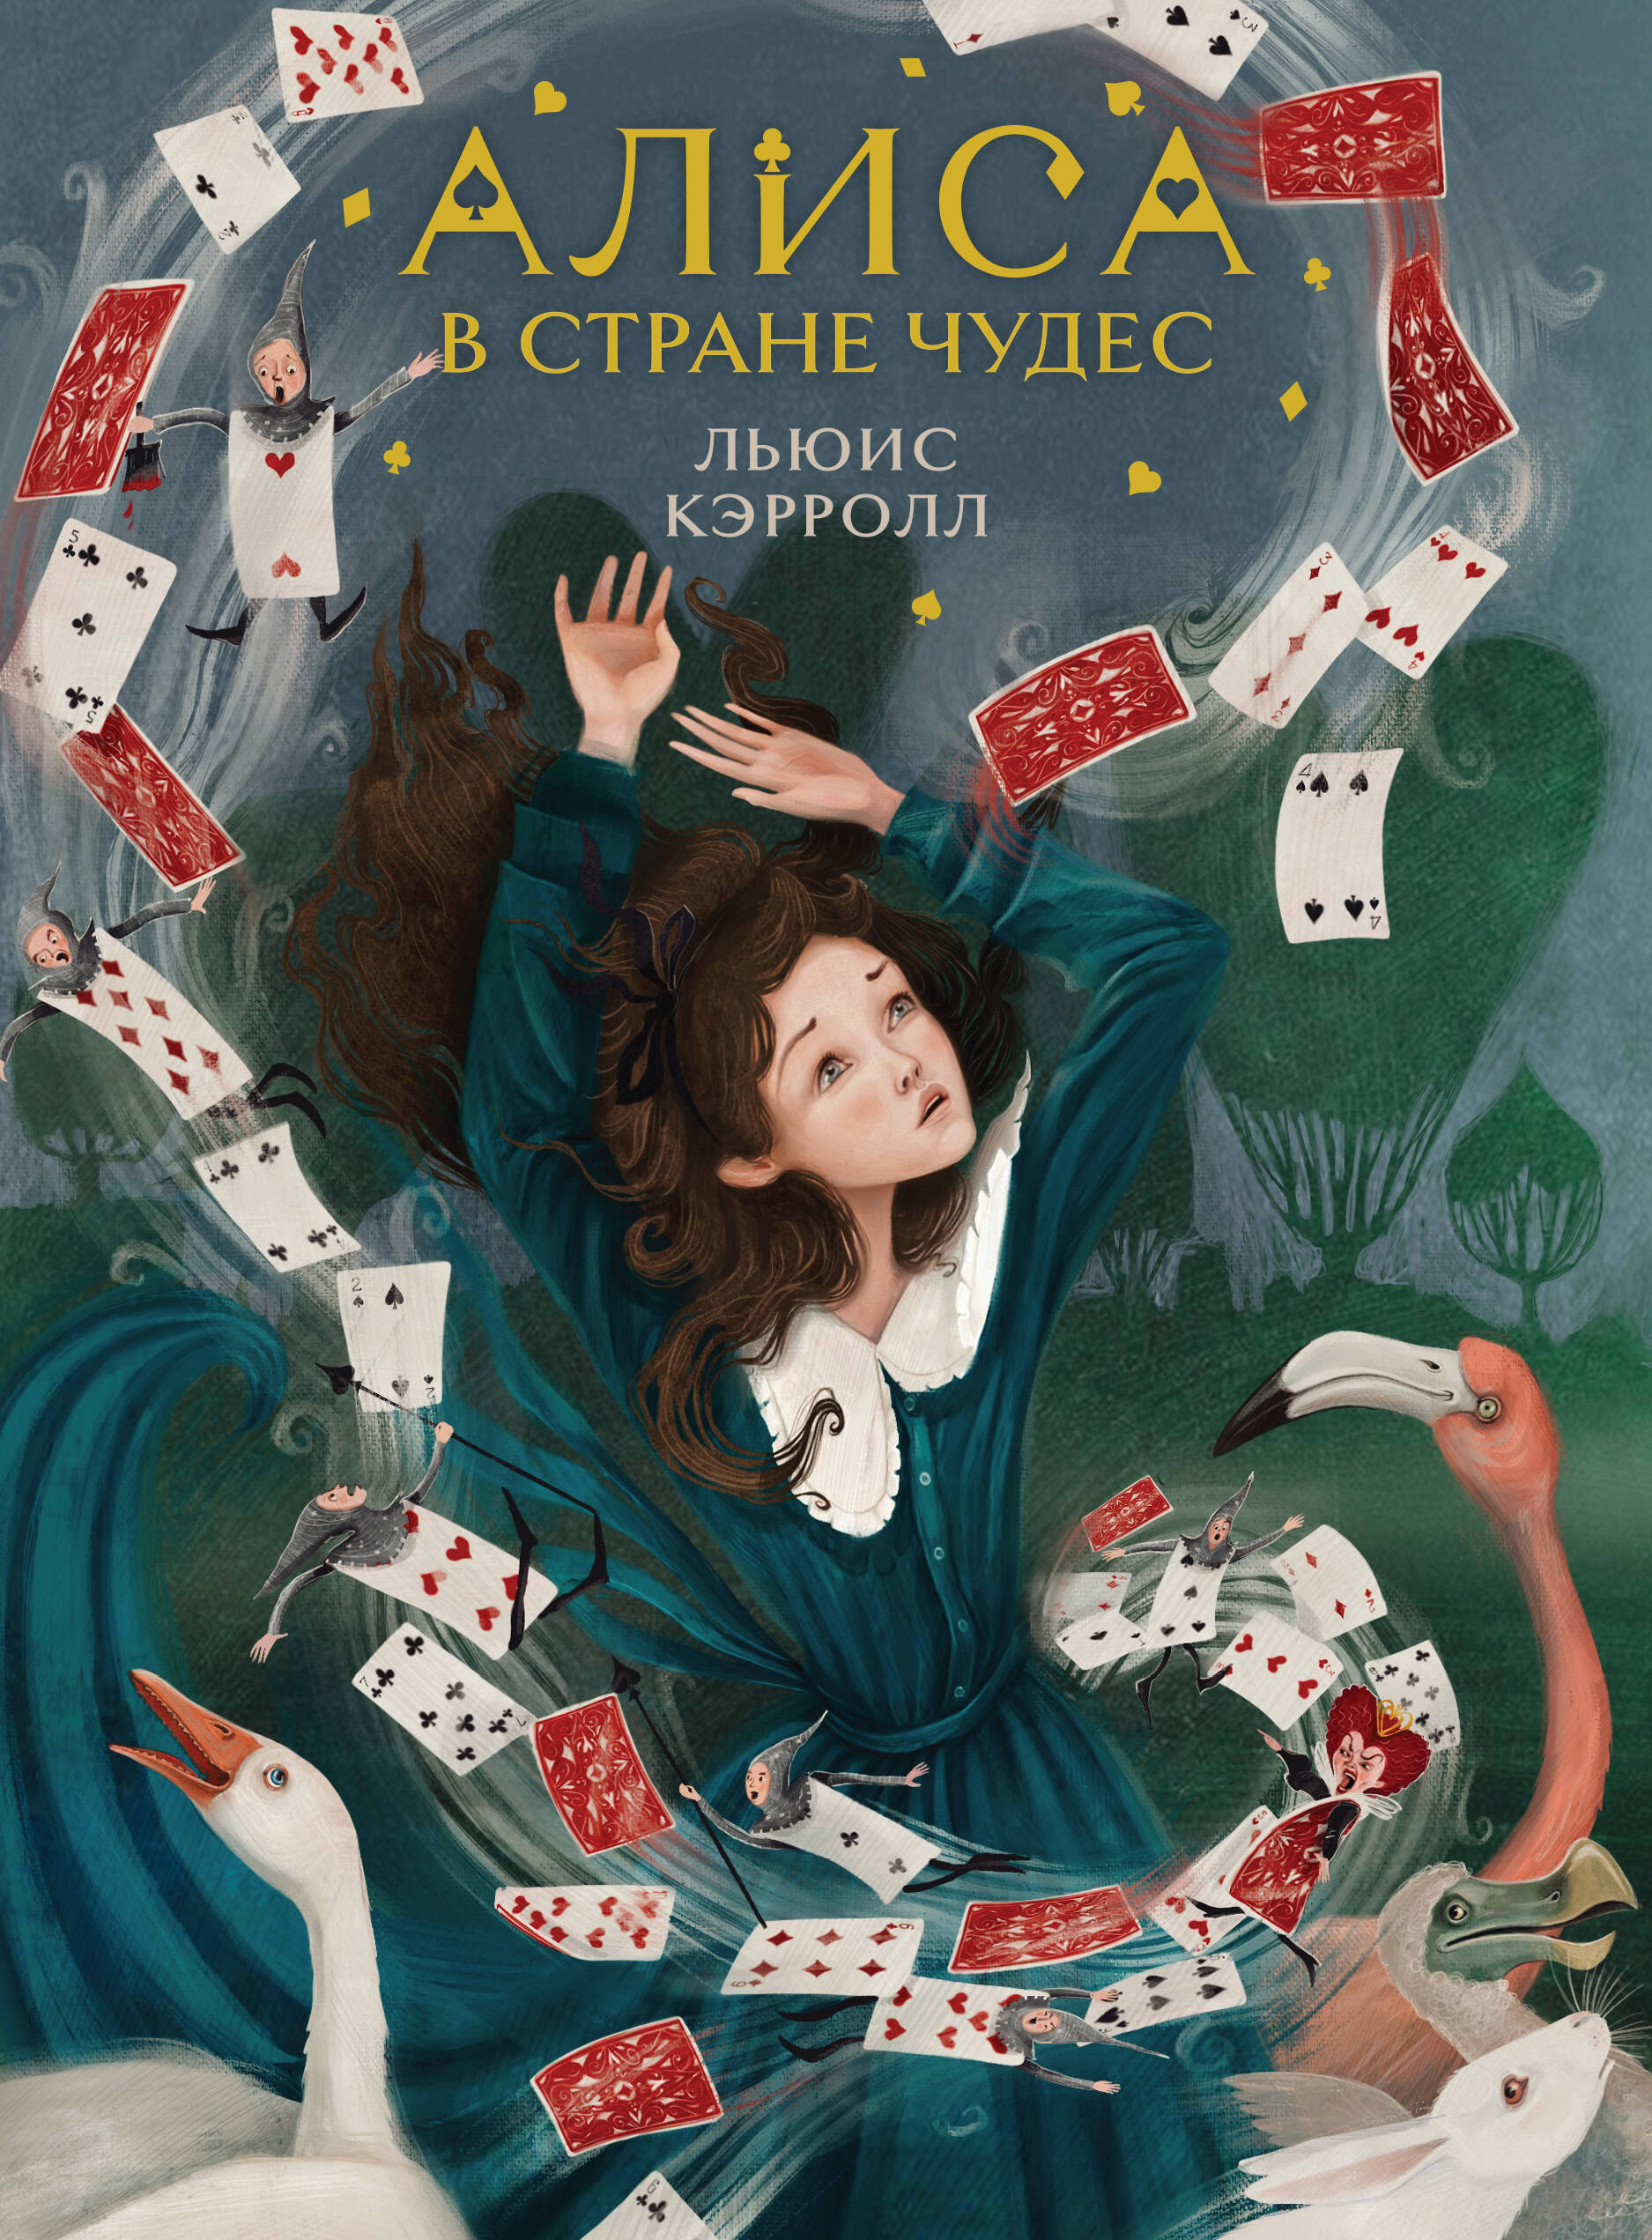 Кэрролл Льюис - Алиса в Стране чудес (иллюстрированное издание)